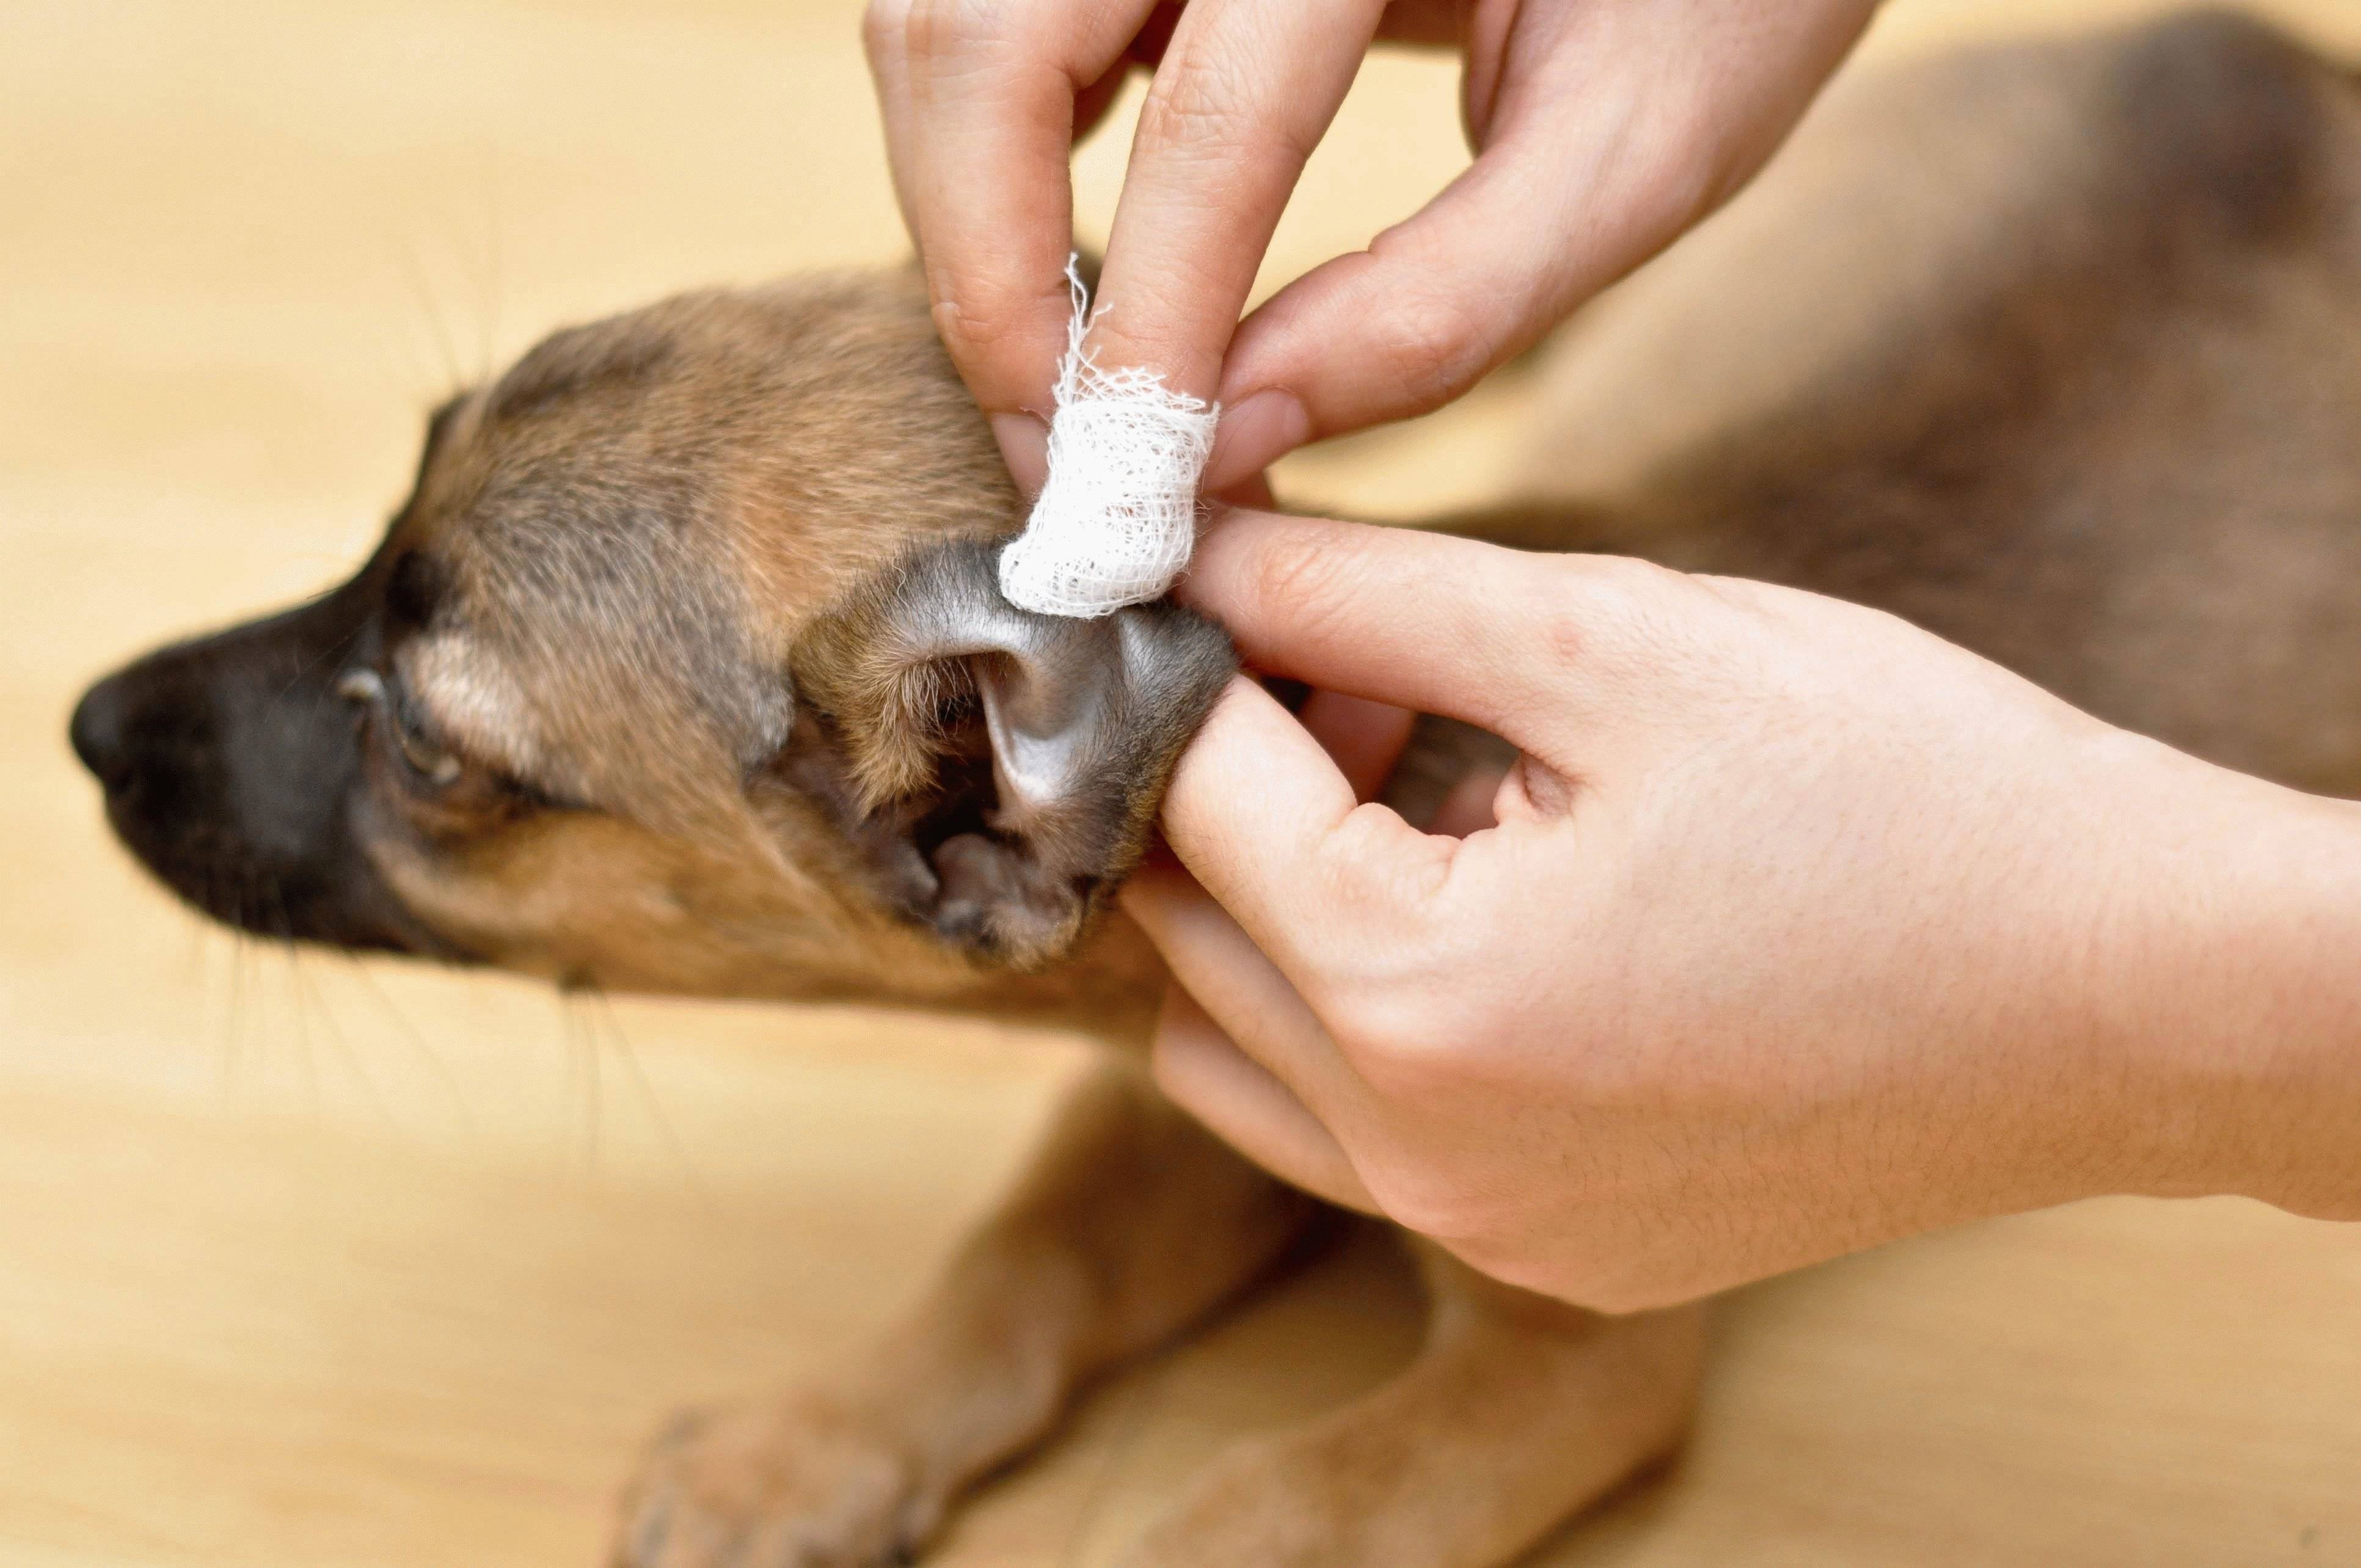 Отит у собак: причины, симптомы, лечение и профилактика